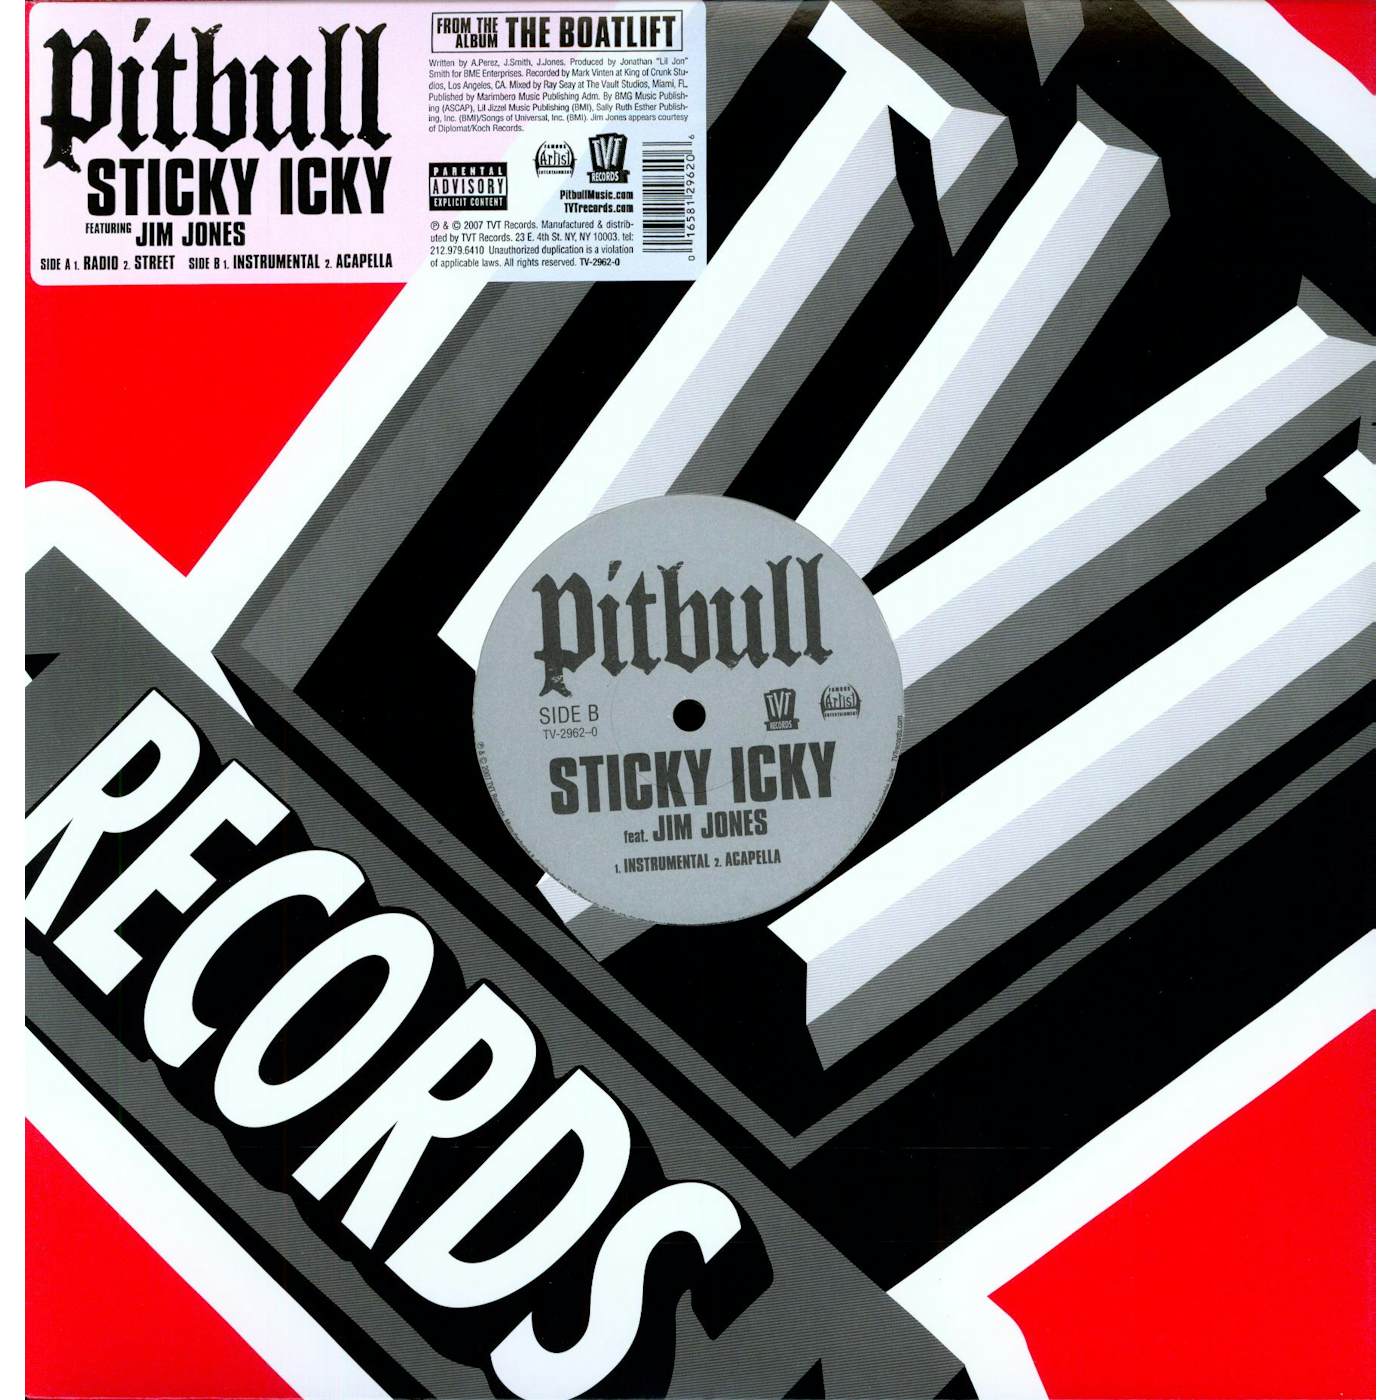 Pitbull STICKY ICKY Vinyl Record